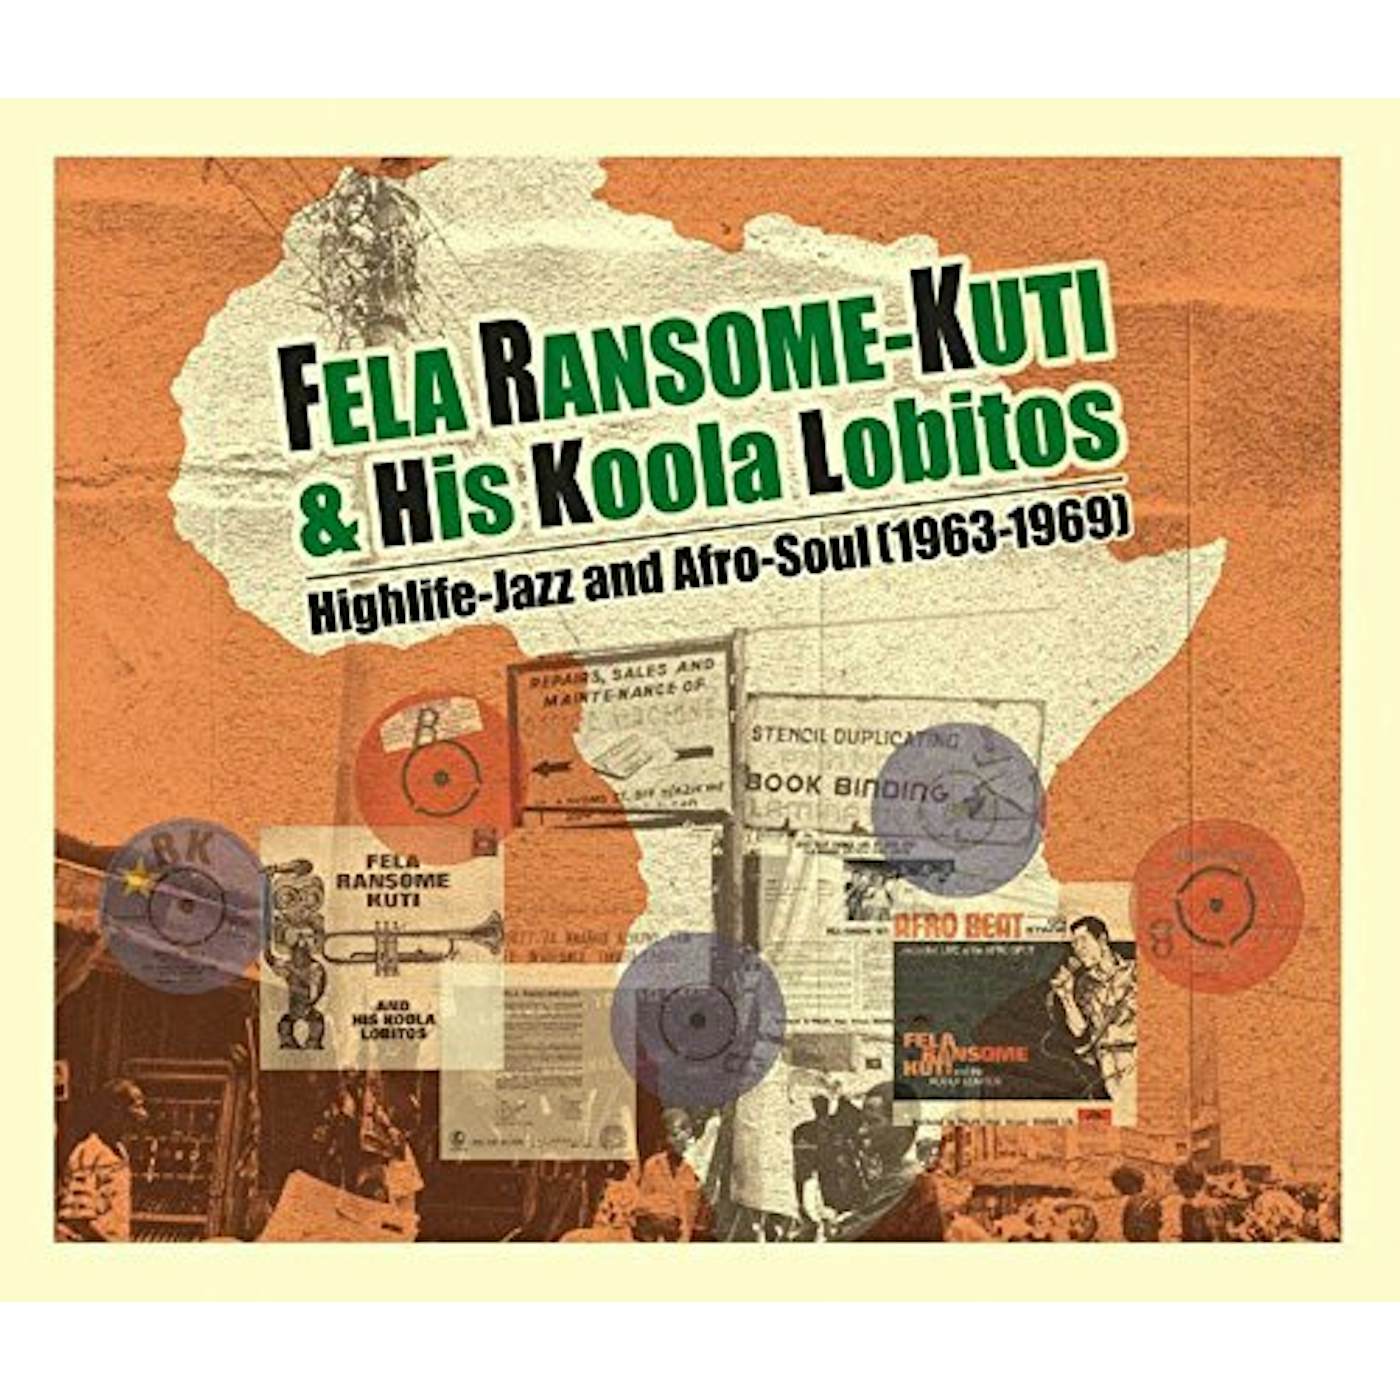 Fela Ransome Kuti & His Koola Lobitos HIGHLIFE: JAZZ & AFRO-SOUL 1963-1969 CD